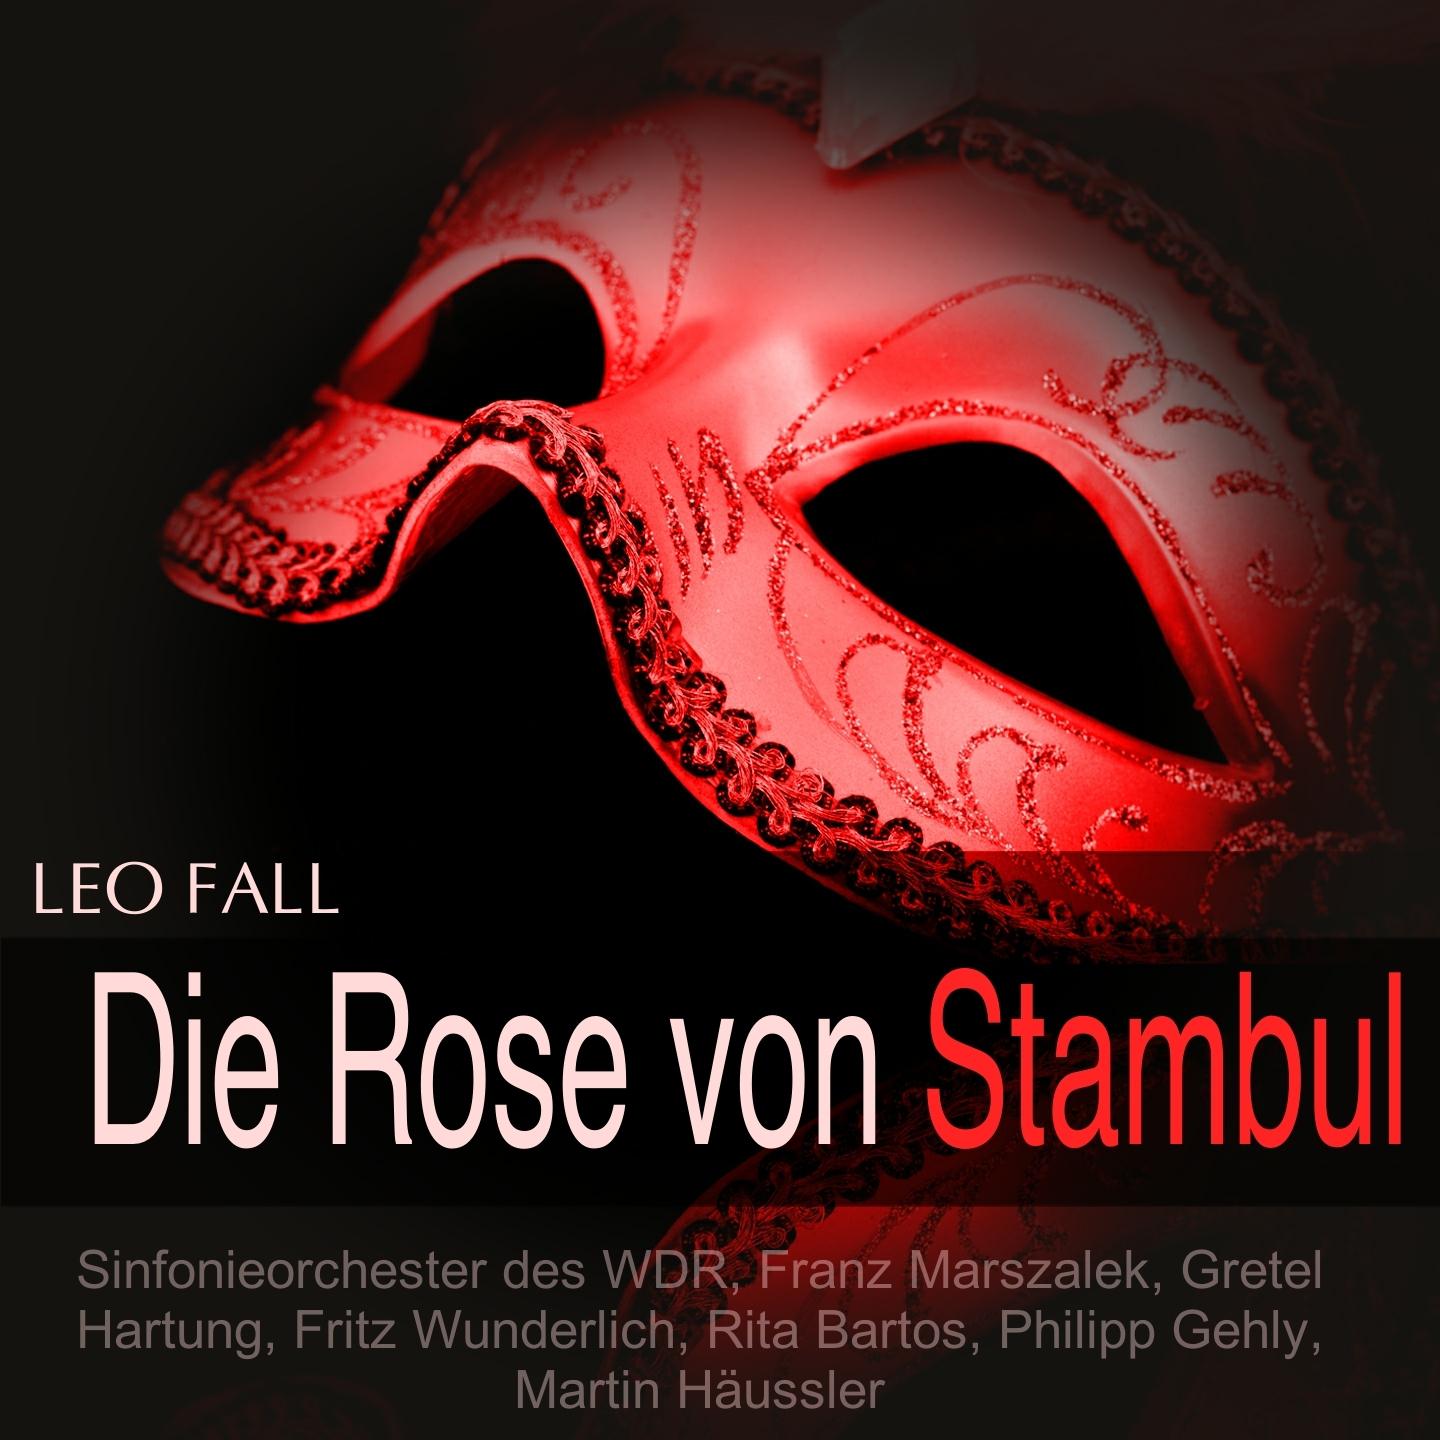 Die Rose von Stambul, Act II: " Die Stunde d mmert" Chor